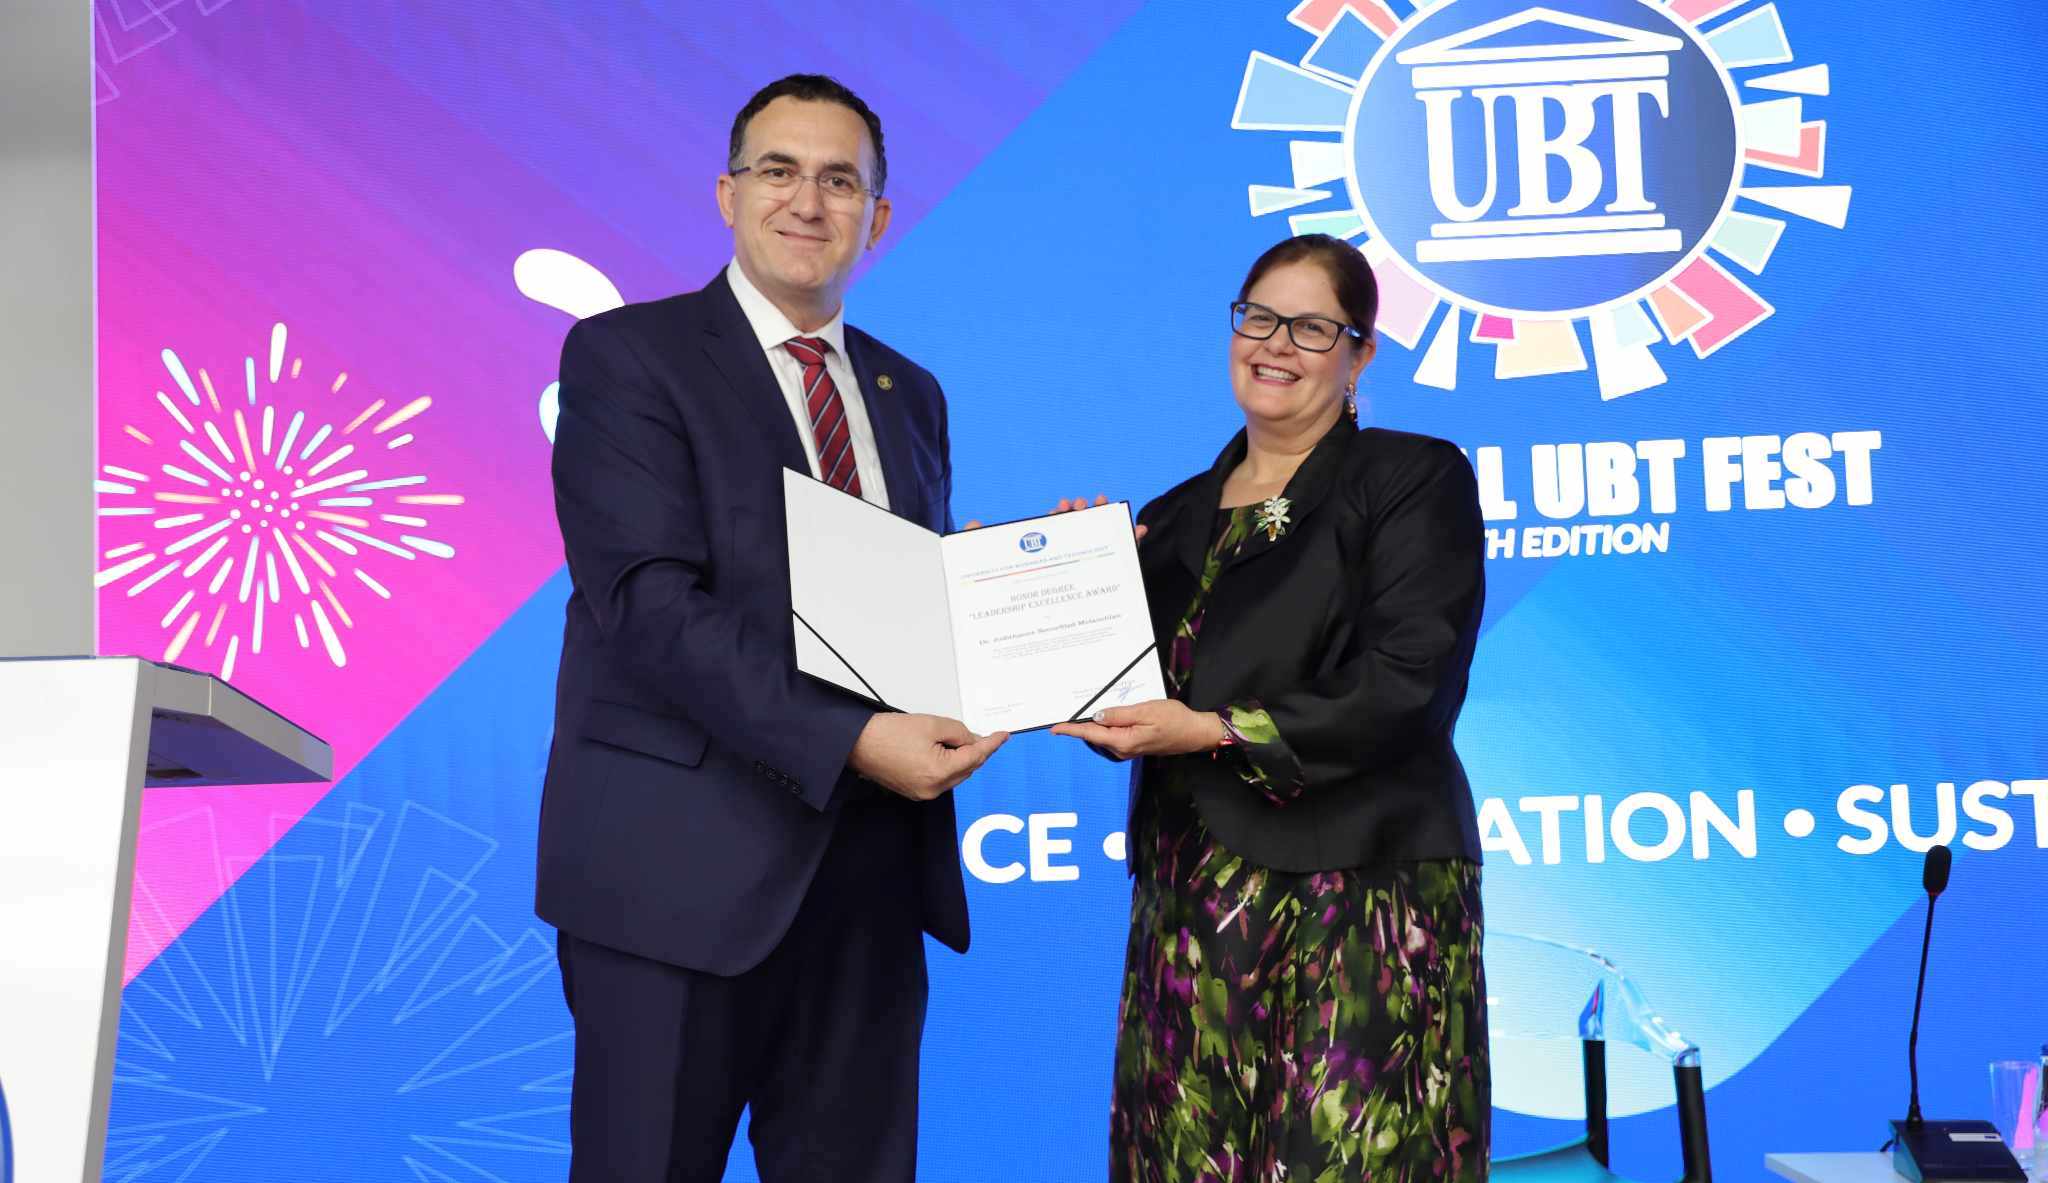 UBT ndan çmimin “Leadership Excellence Award” për Dr. Judithanne Scourfiled Mclauchlan, në njohje të përkushtimit të saj në promovimin e shtetit të së drejtës dhe demokracisë